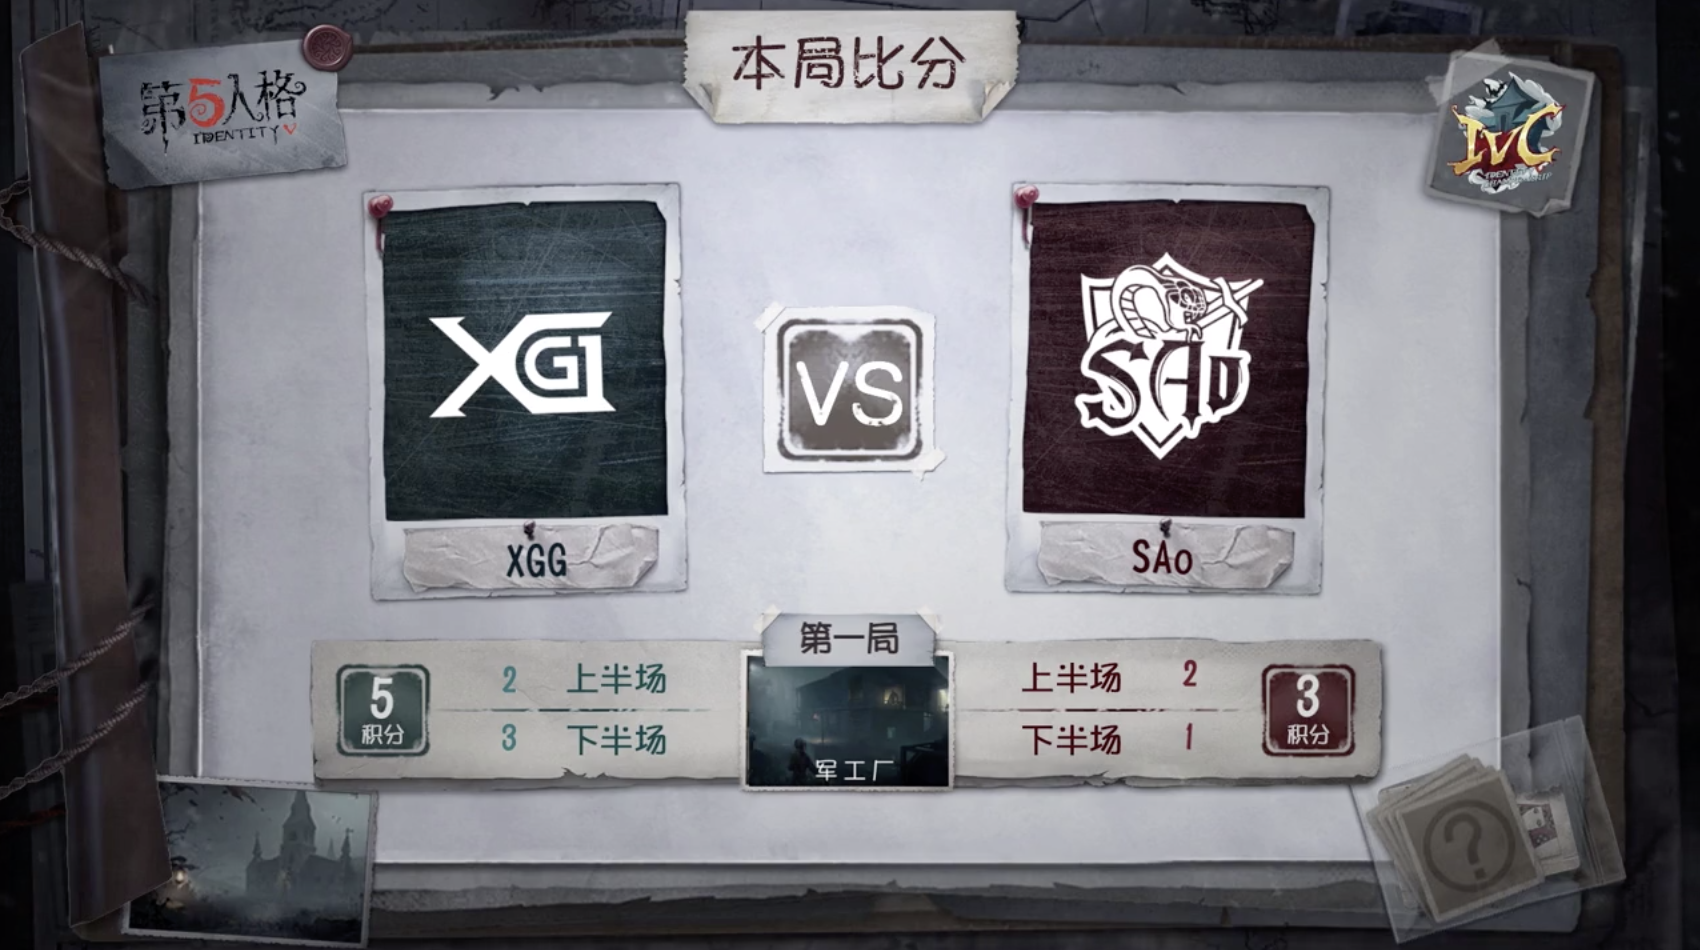 10月20日 XGG vs SAo小组赛BO3第一局